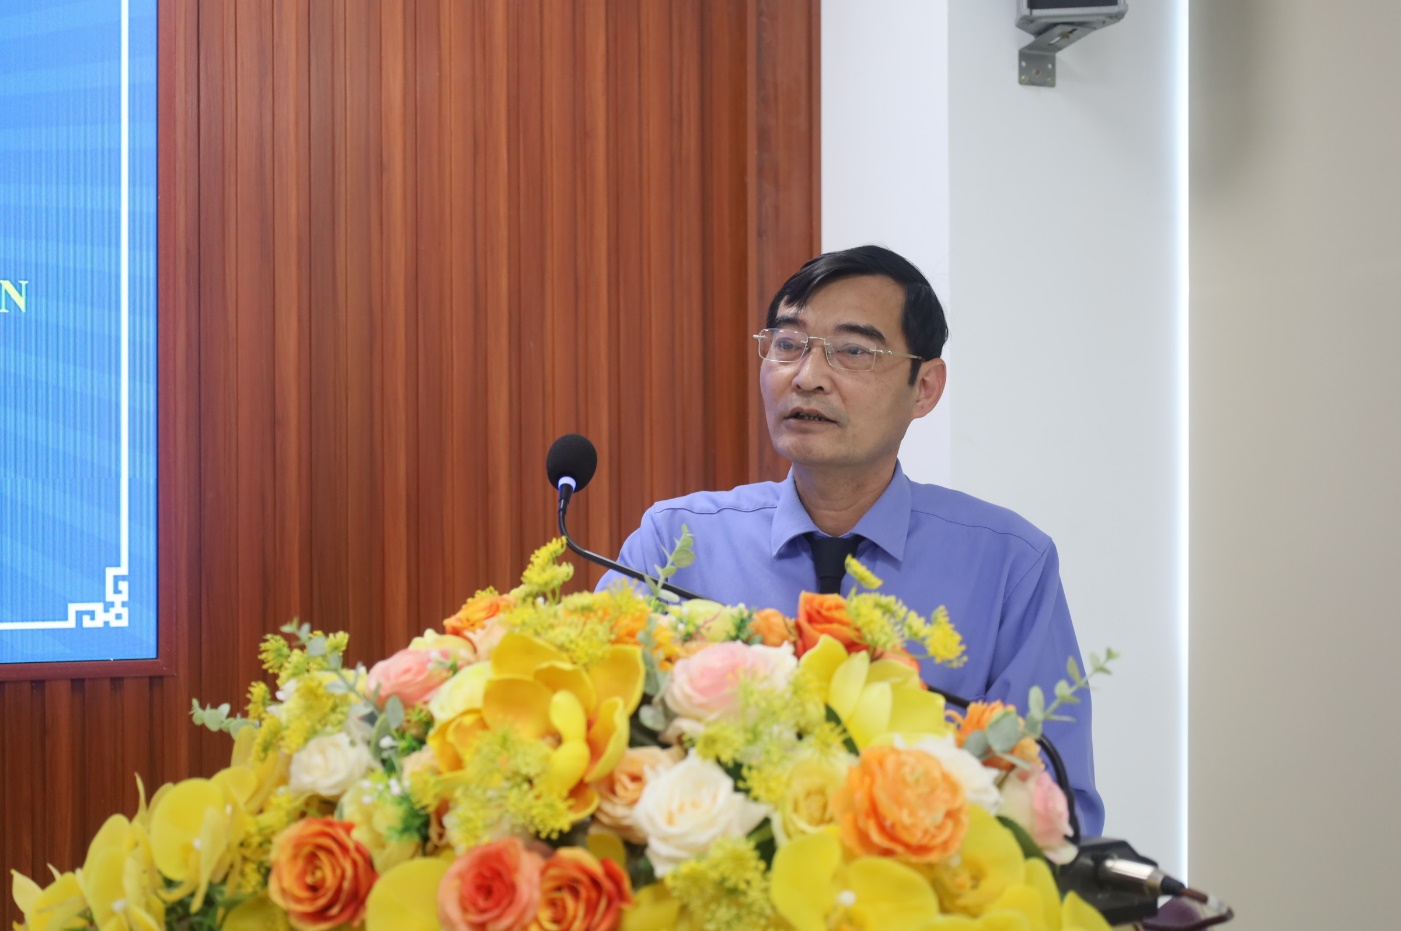 Đồng chí Nguyễn Đức Thanh, Ủy viên Ban cán sự đảng, Phó Viện trưởng VKSND tỉnh  phát biểu chỉ đạo tại buổi sinh hoạt